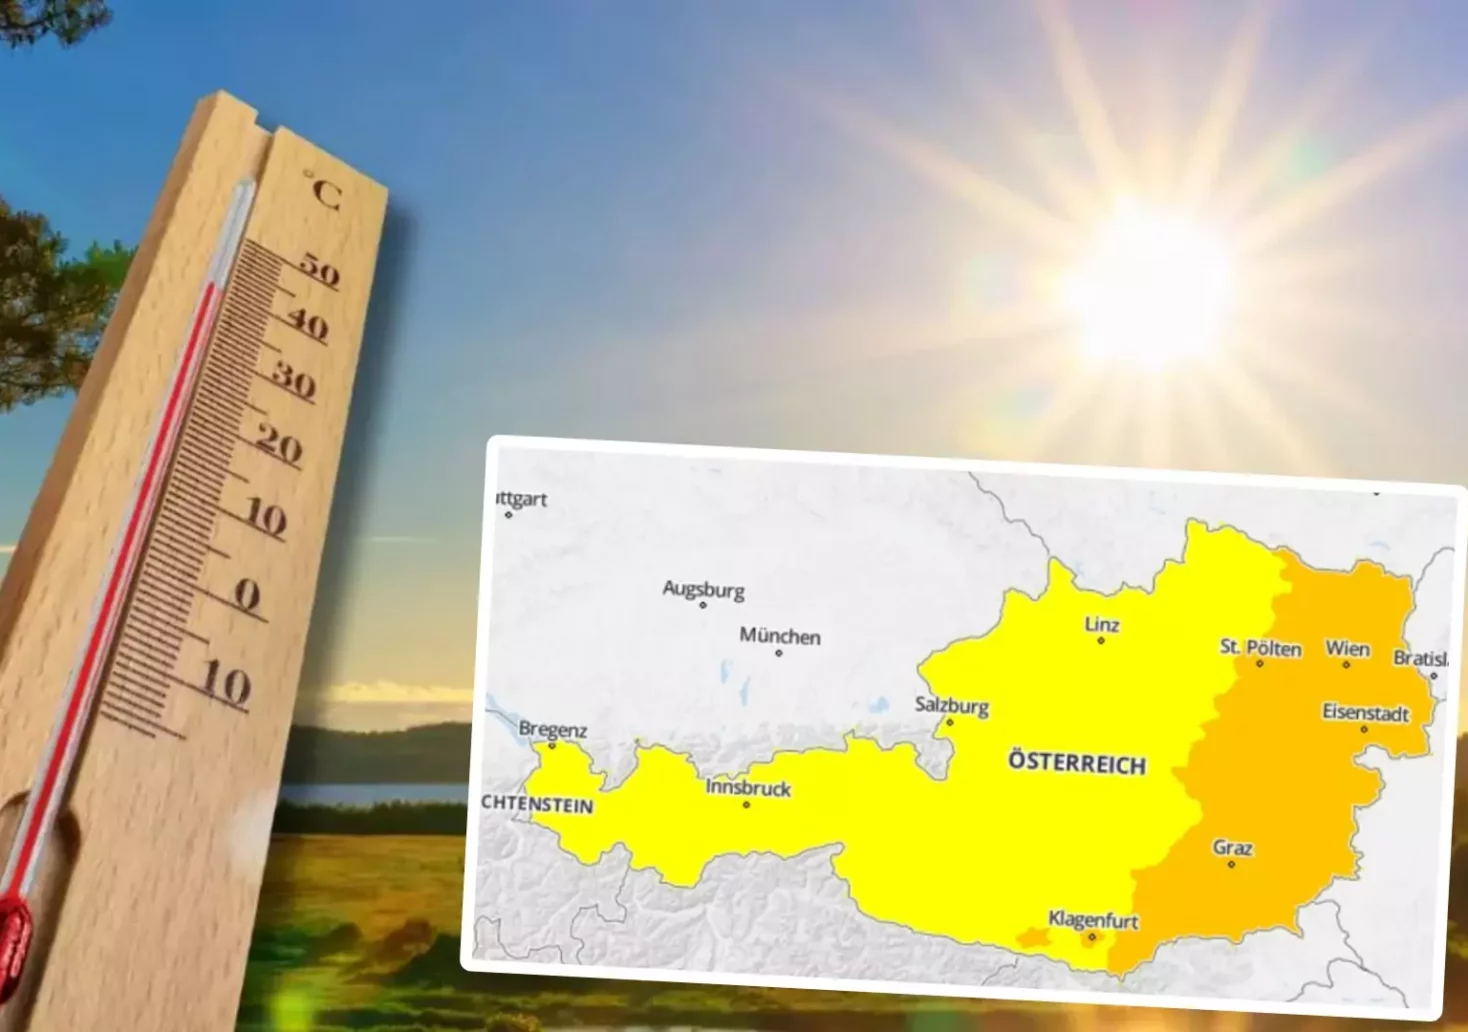 Foto in Beitrag von 5min.at: Zu sehen ist ein Thermometer, die Sonne im Hintergrund und die Hitzewarnung in Österreich für Freitag und Samstag.